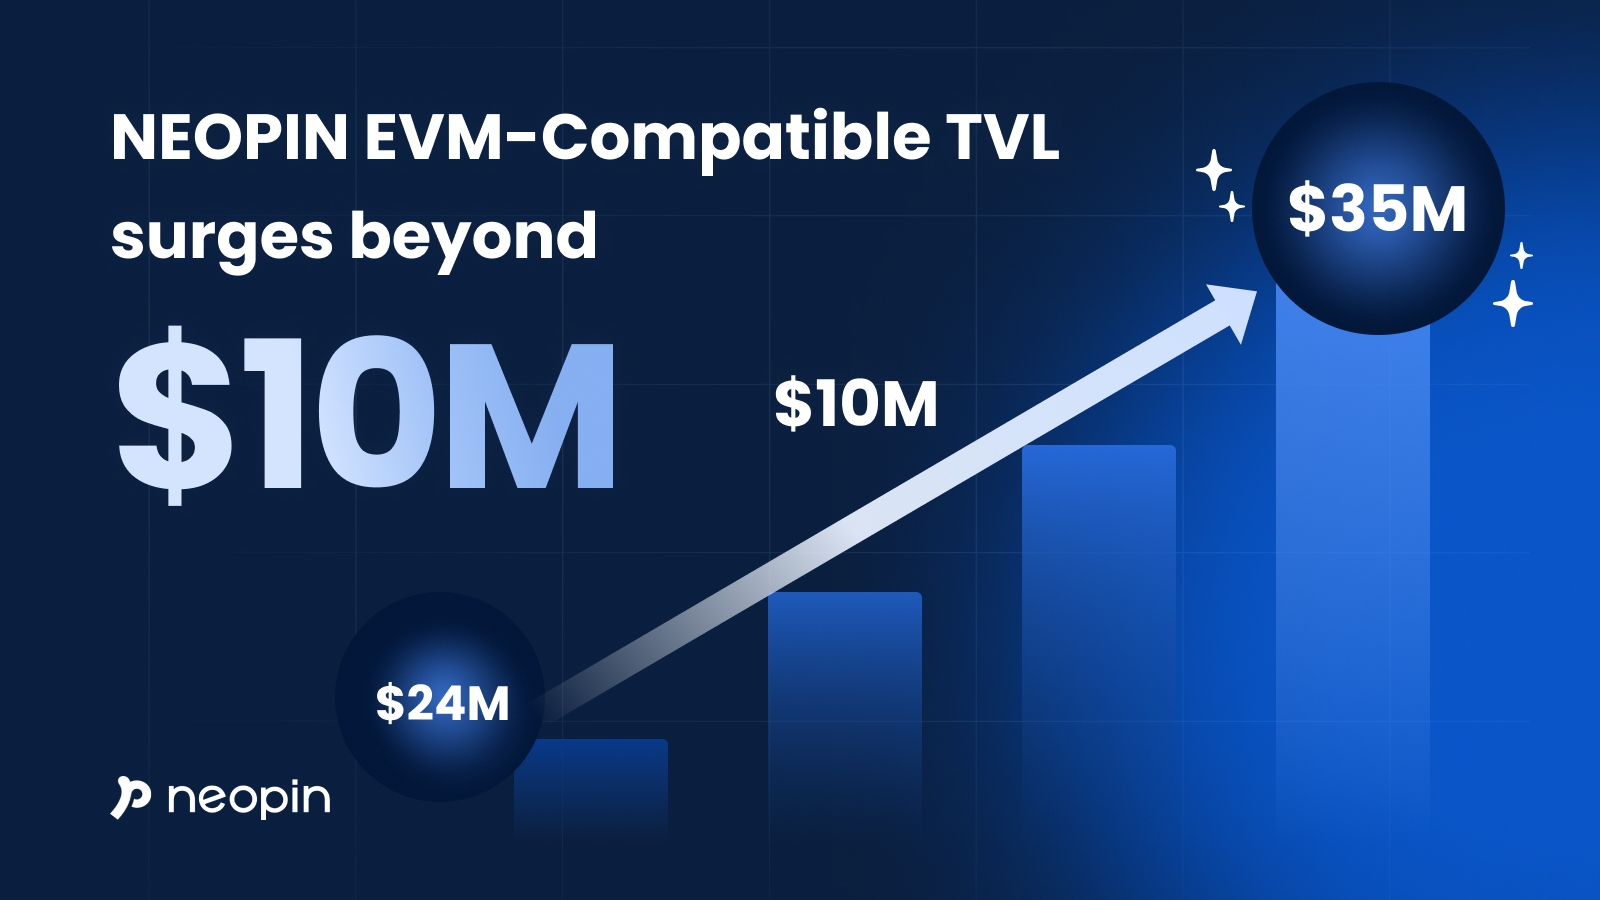 네오핀, 한 달 만에 TVL 1000만 달러 급상승